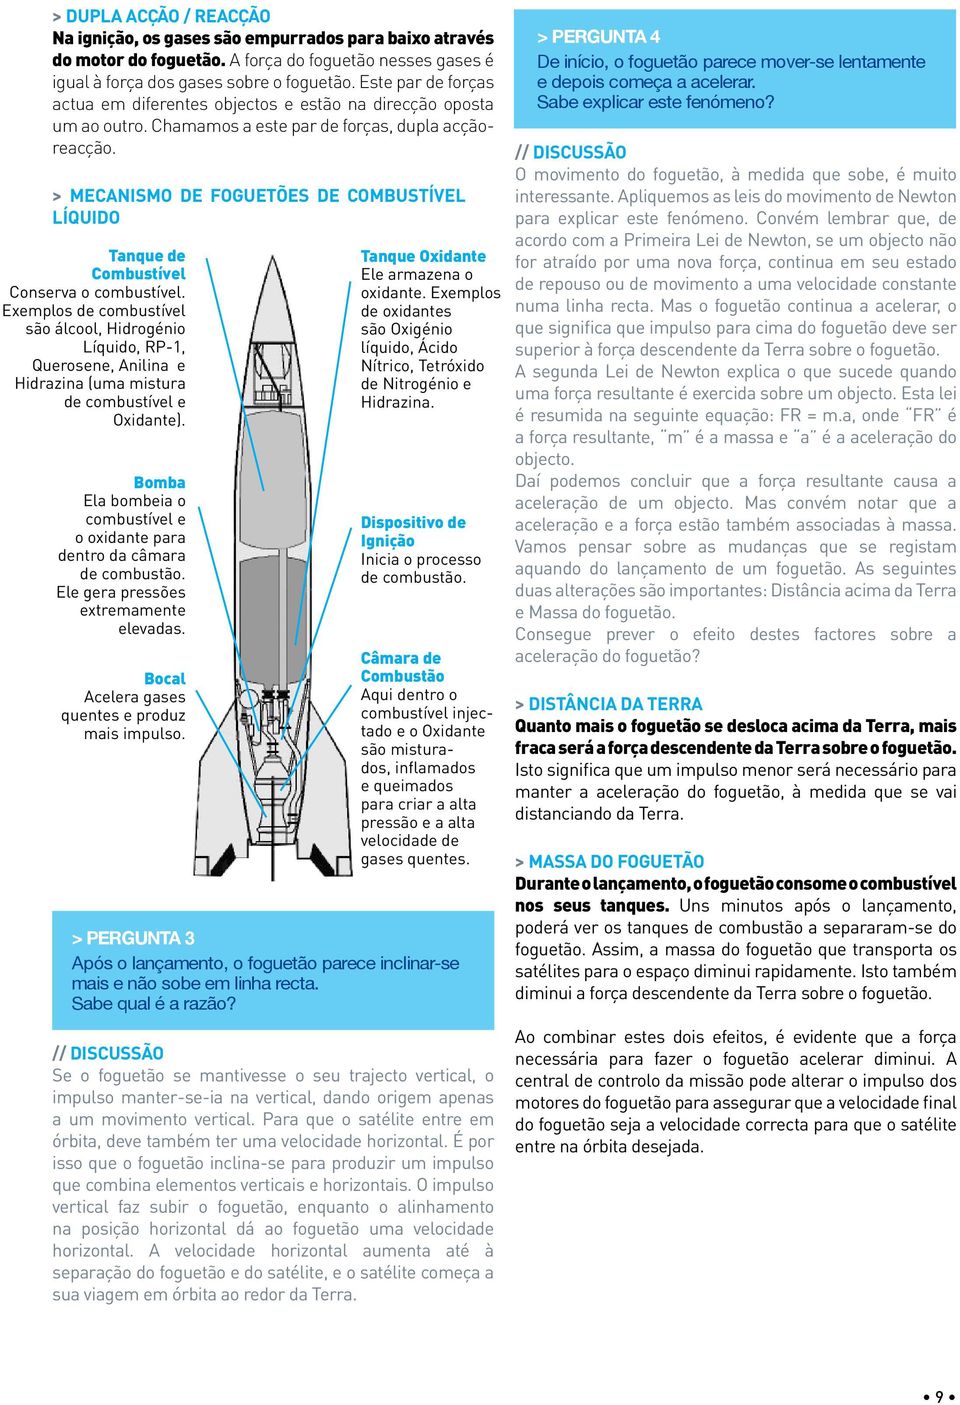 > Mecanismo de foguetões de combustível líquido Tanque de Combustível Conserva o combustível.